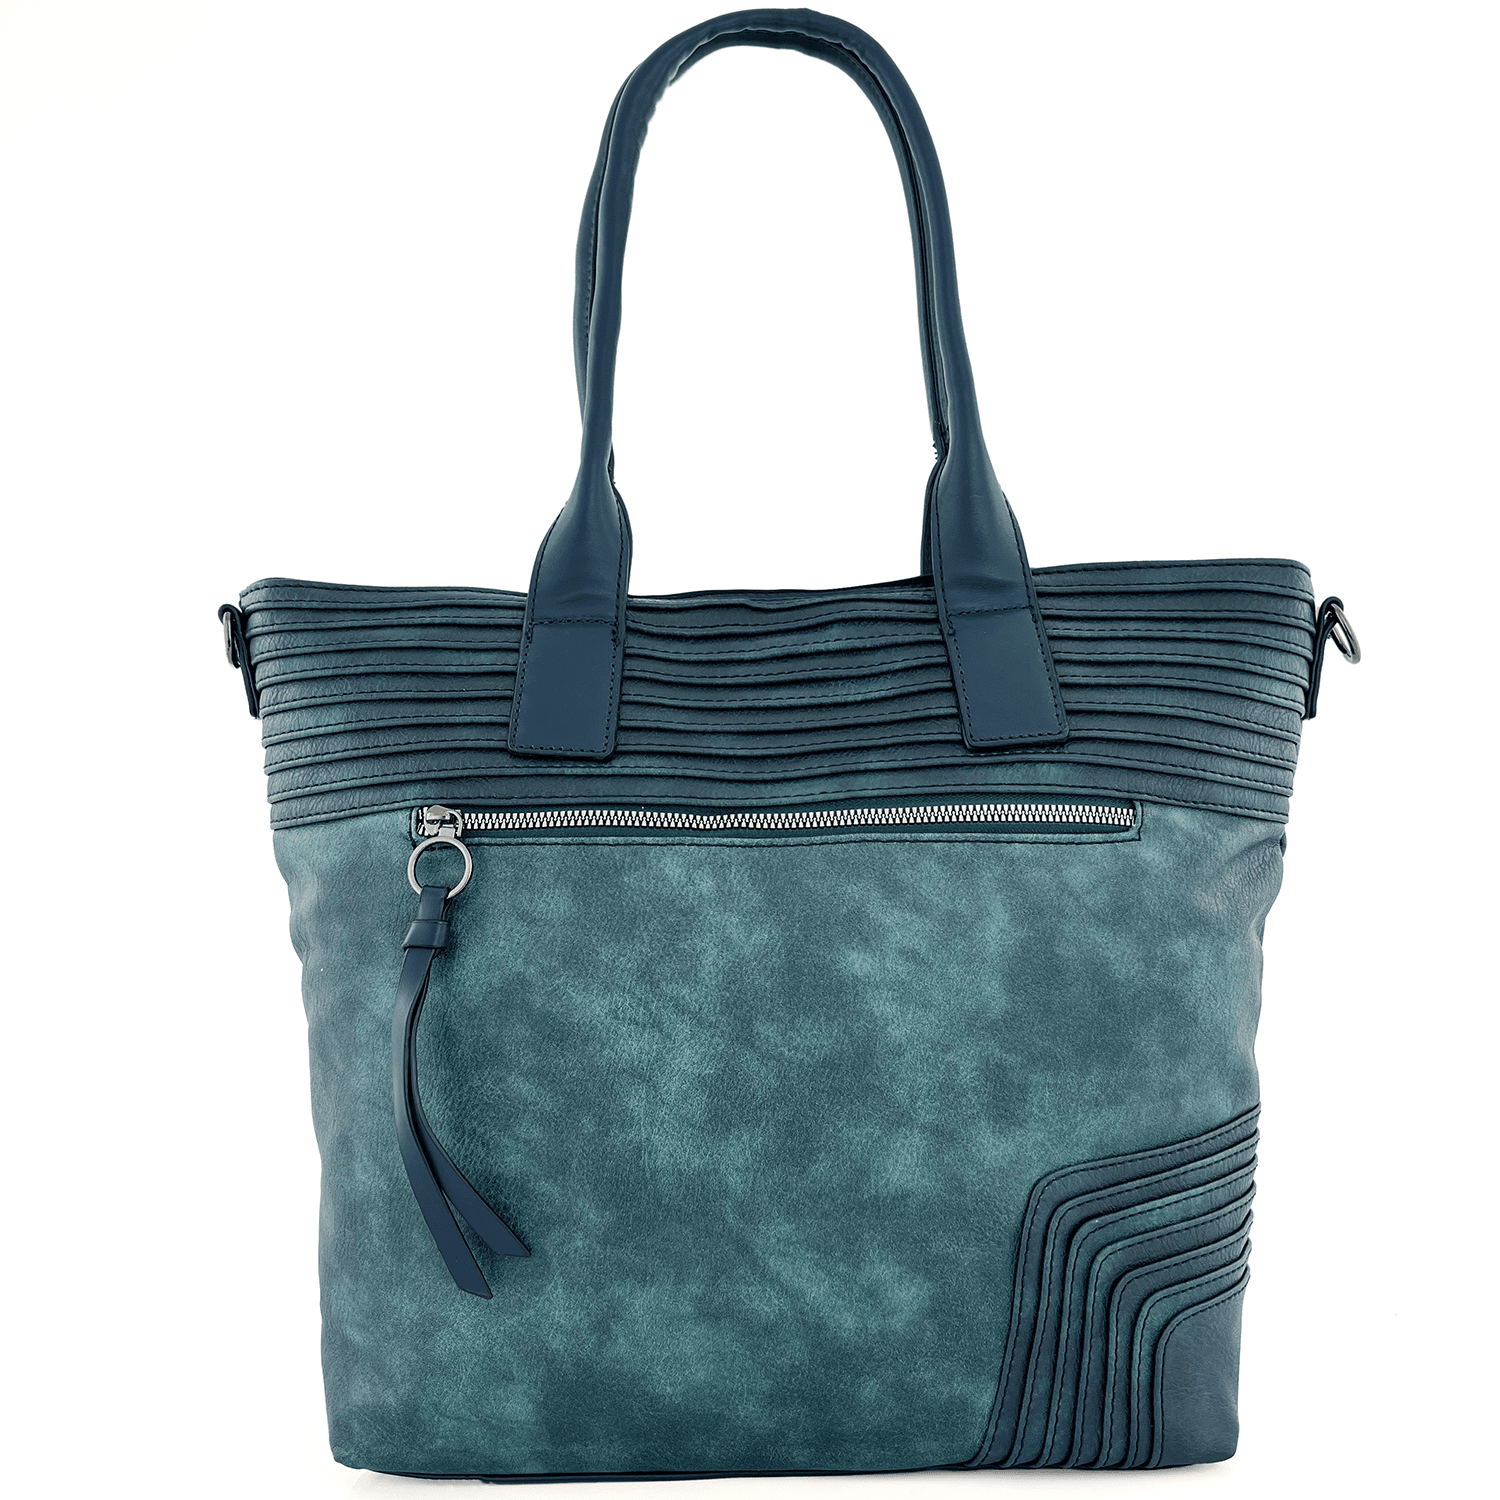 Голяма дамска чанта тип торба с опушен ефект - синя